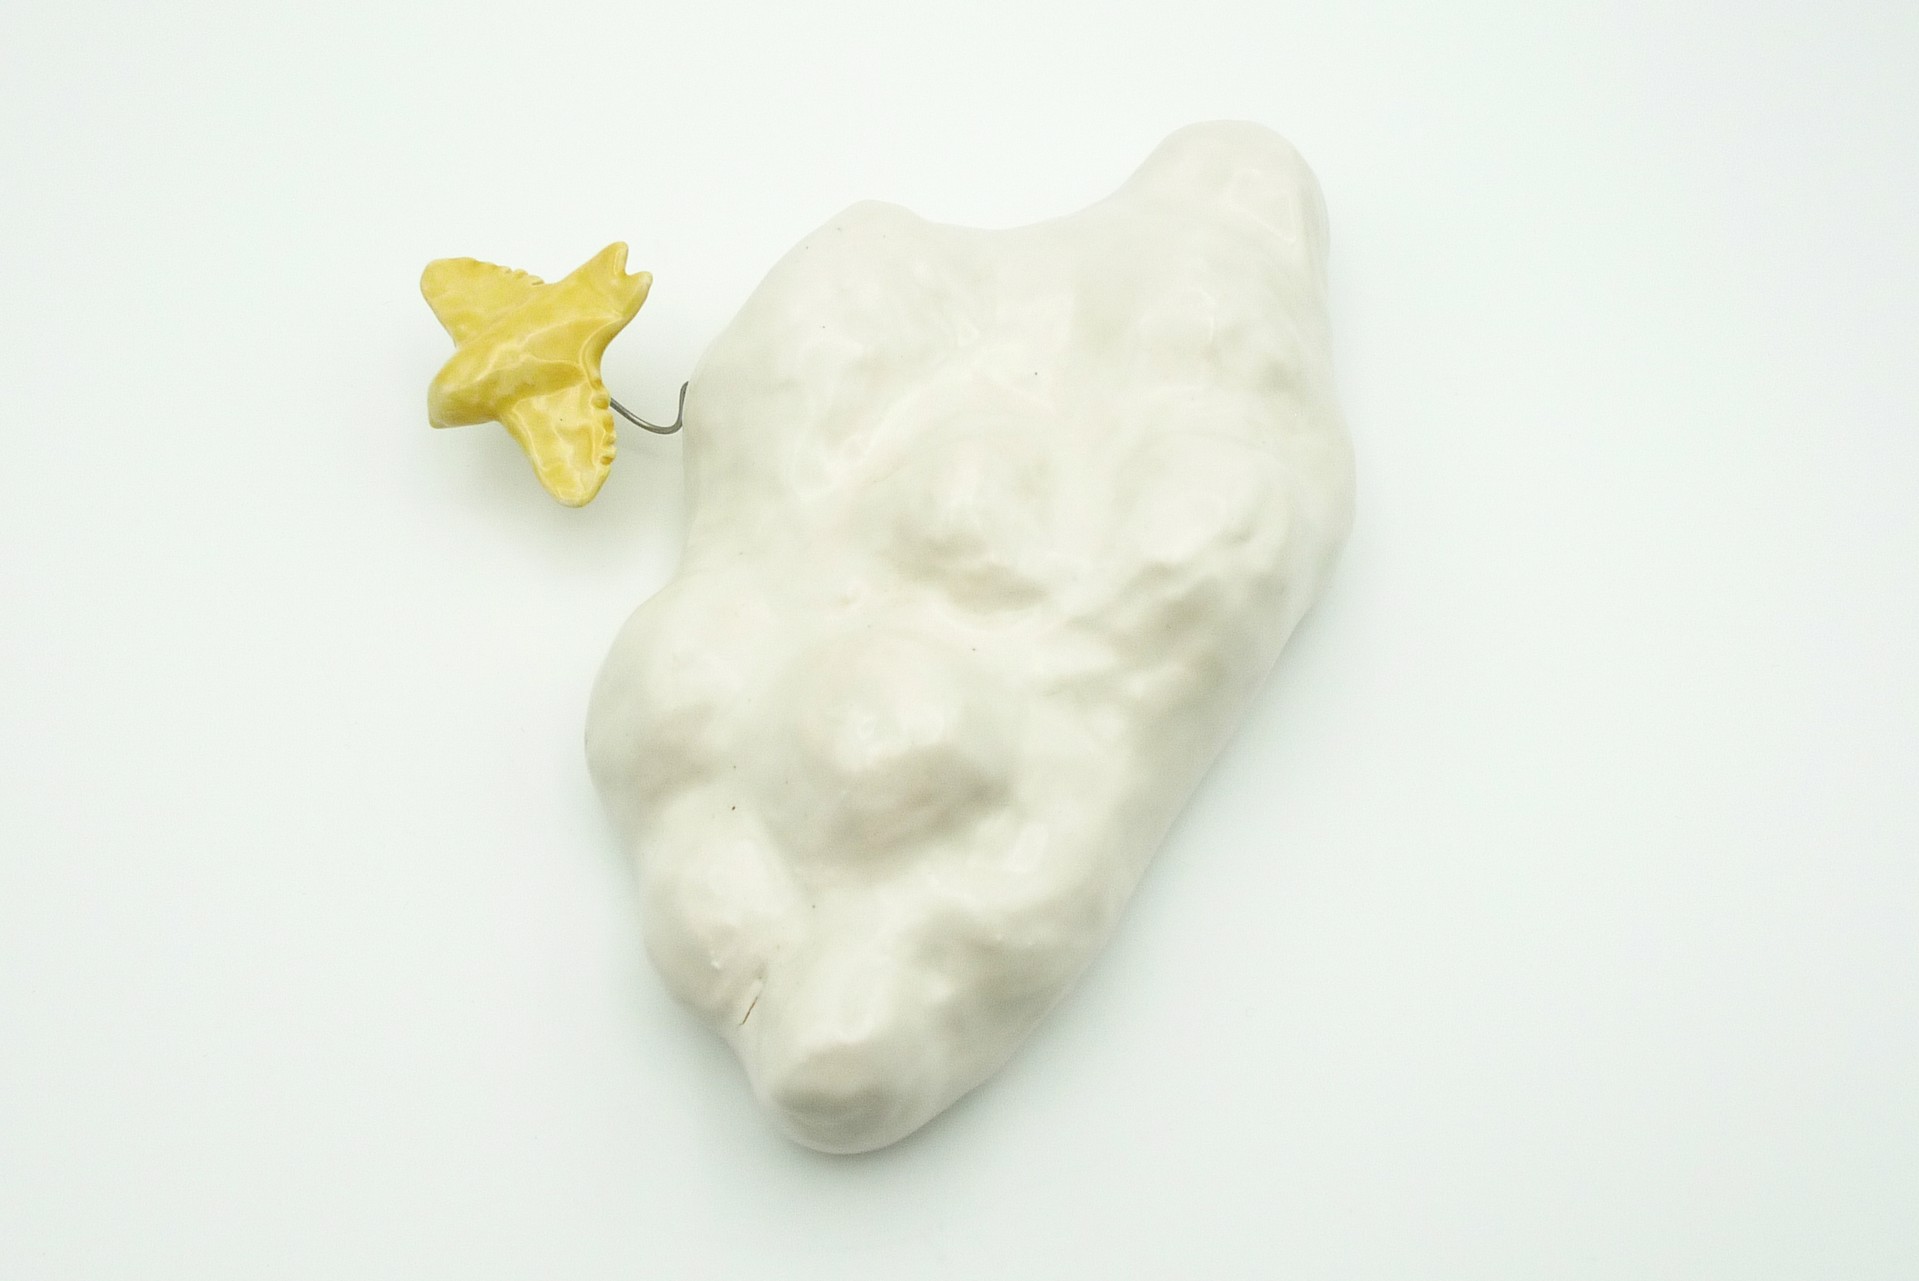 Cloud with Yellow Bird by Debbie Kupinsky